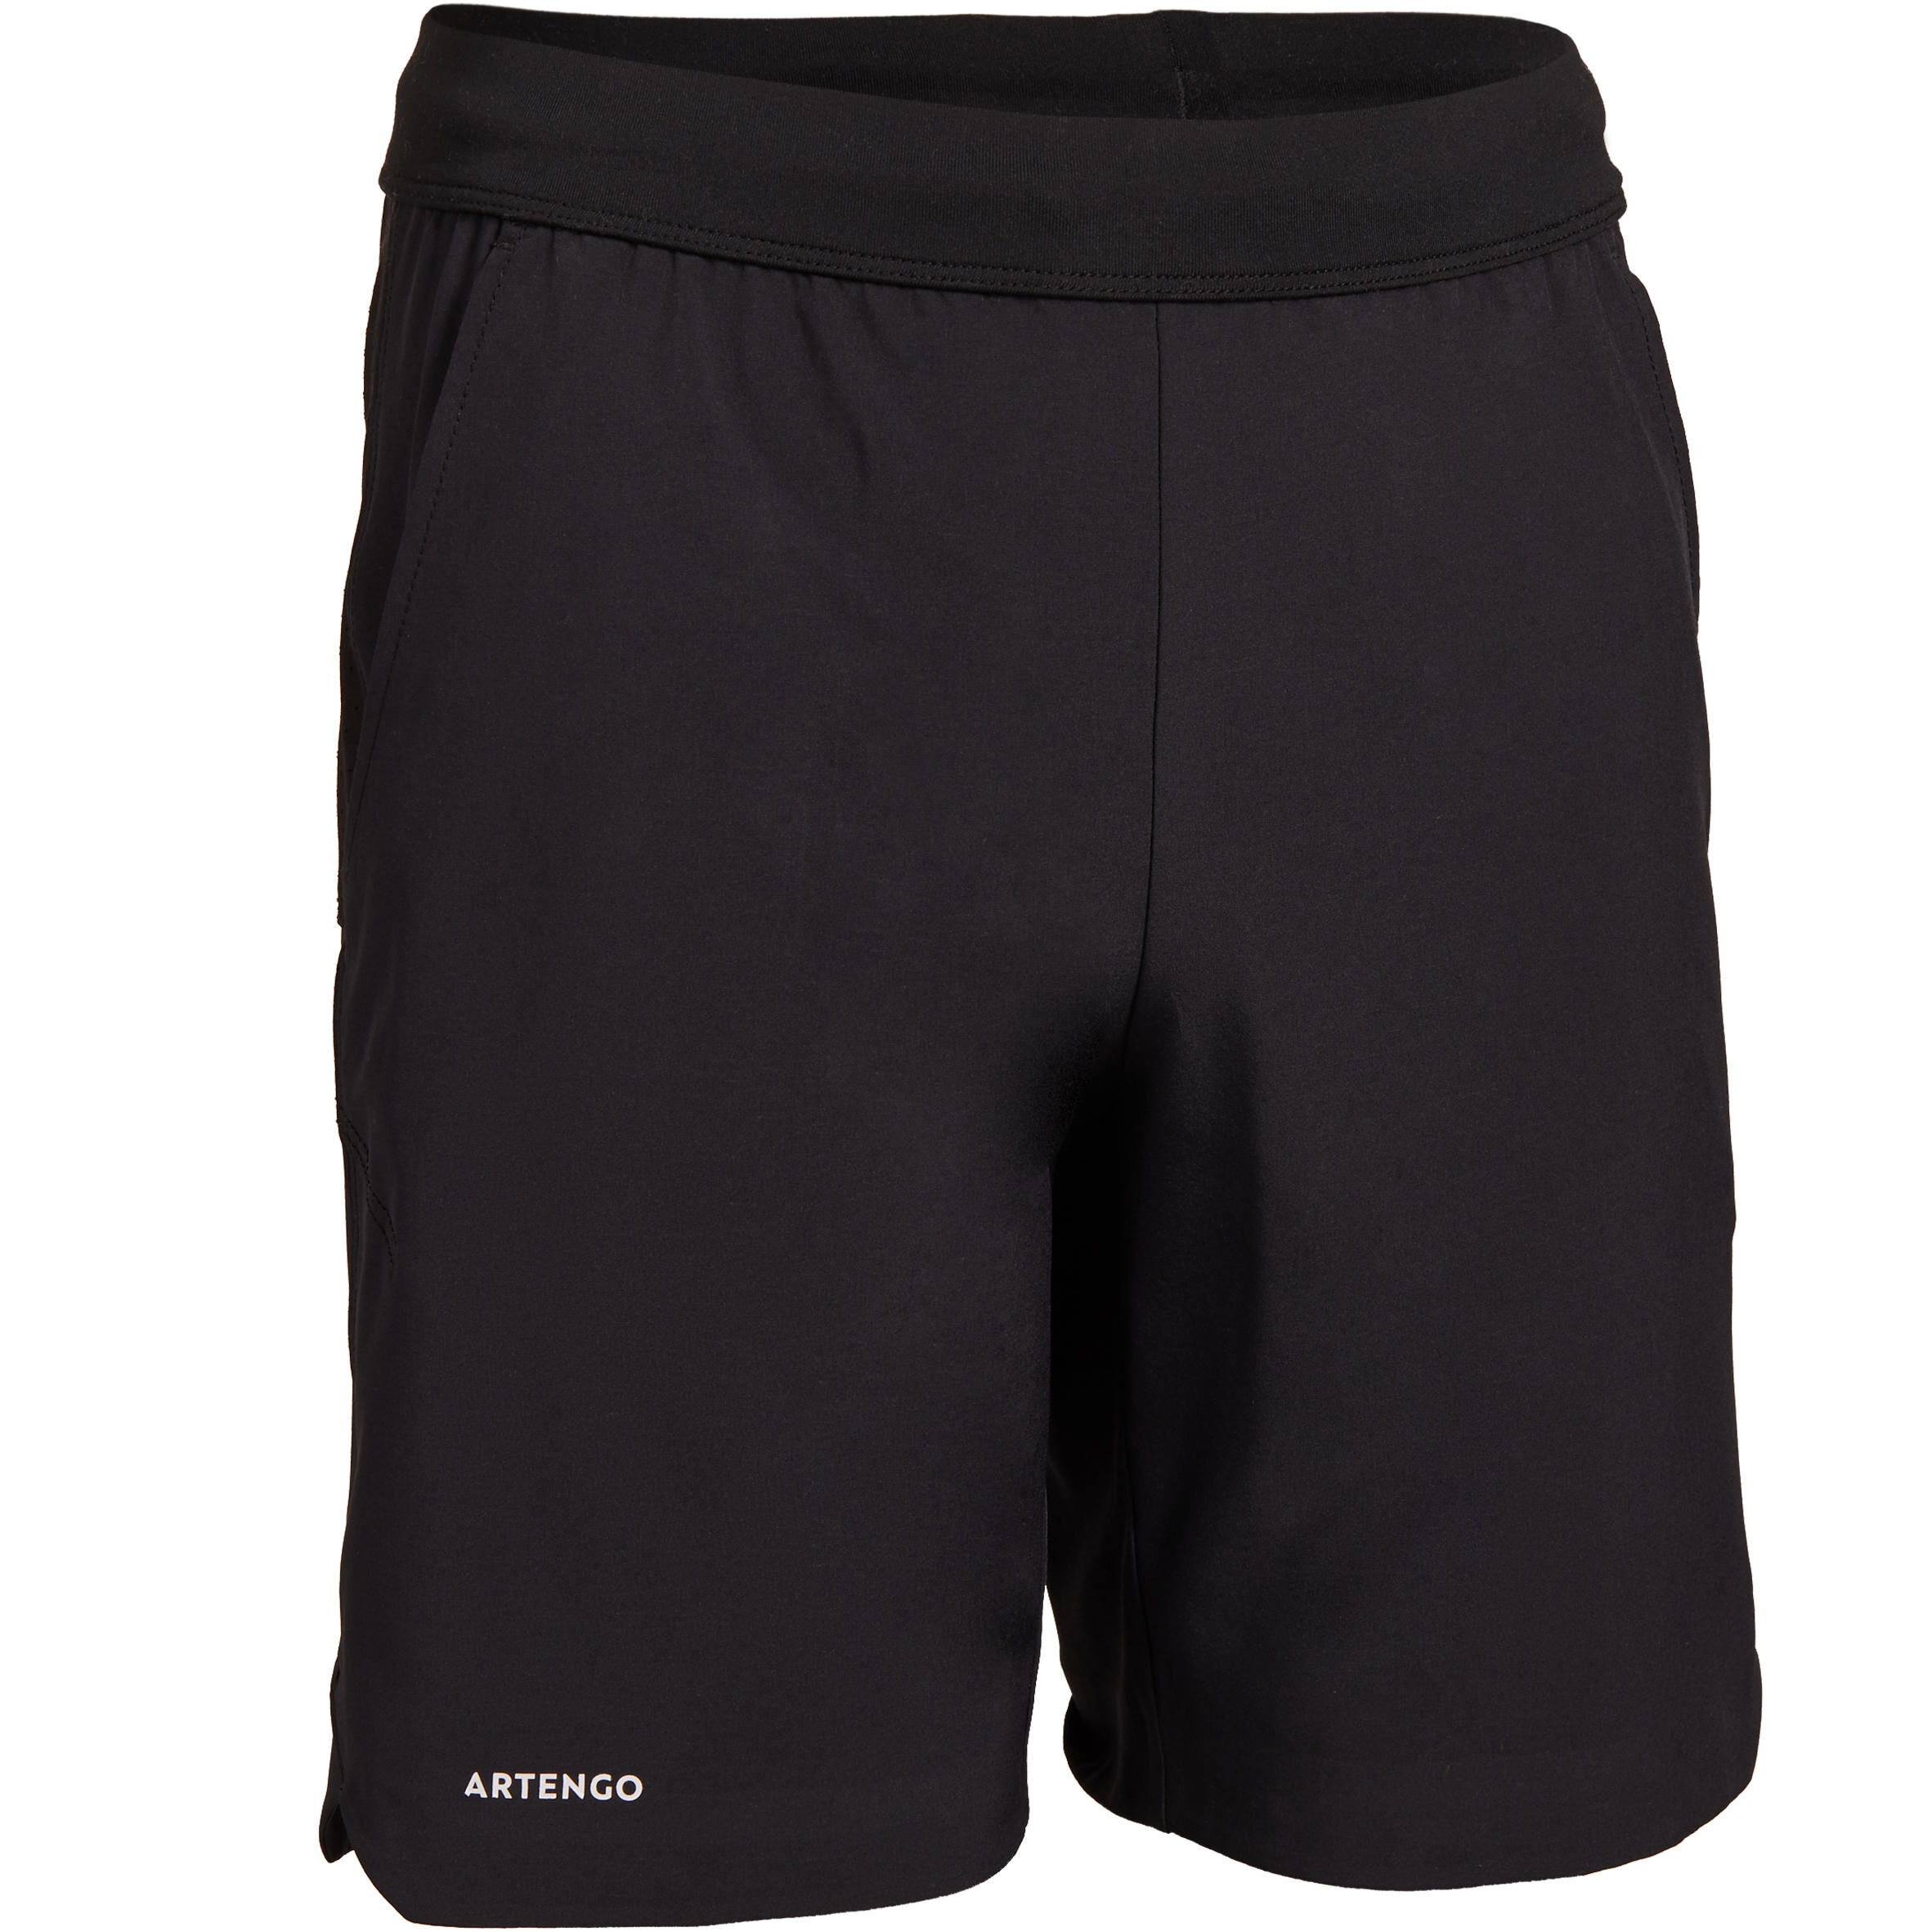 ARTENGO Boys' Tennis Shorts TSH900 - Black